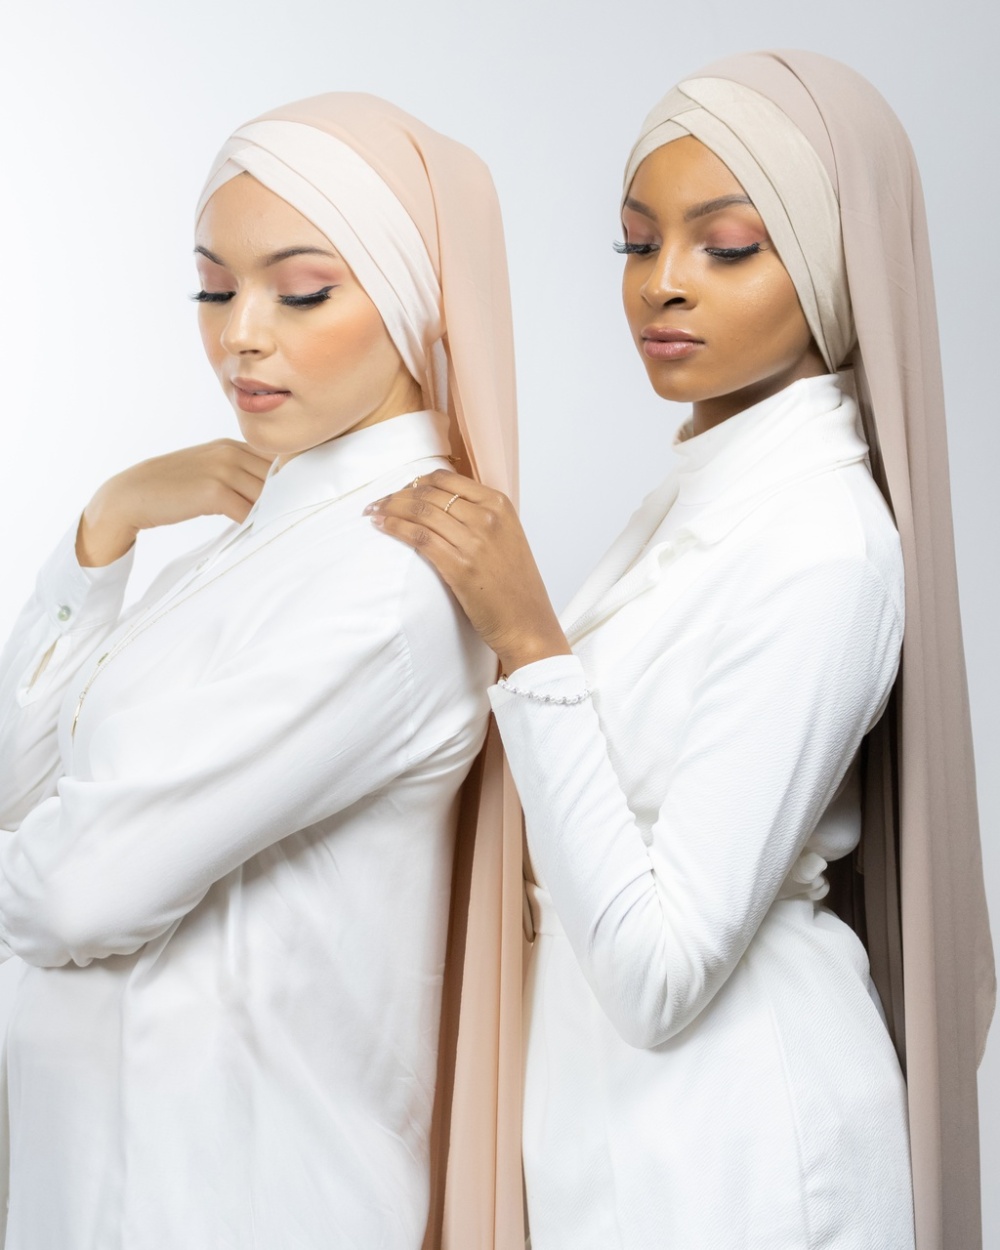 Hijab à enfiler avec Bonnet intégré - Confortable, Pratique et Élégant  LAMIS HIJAB